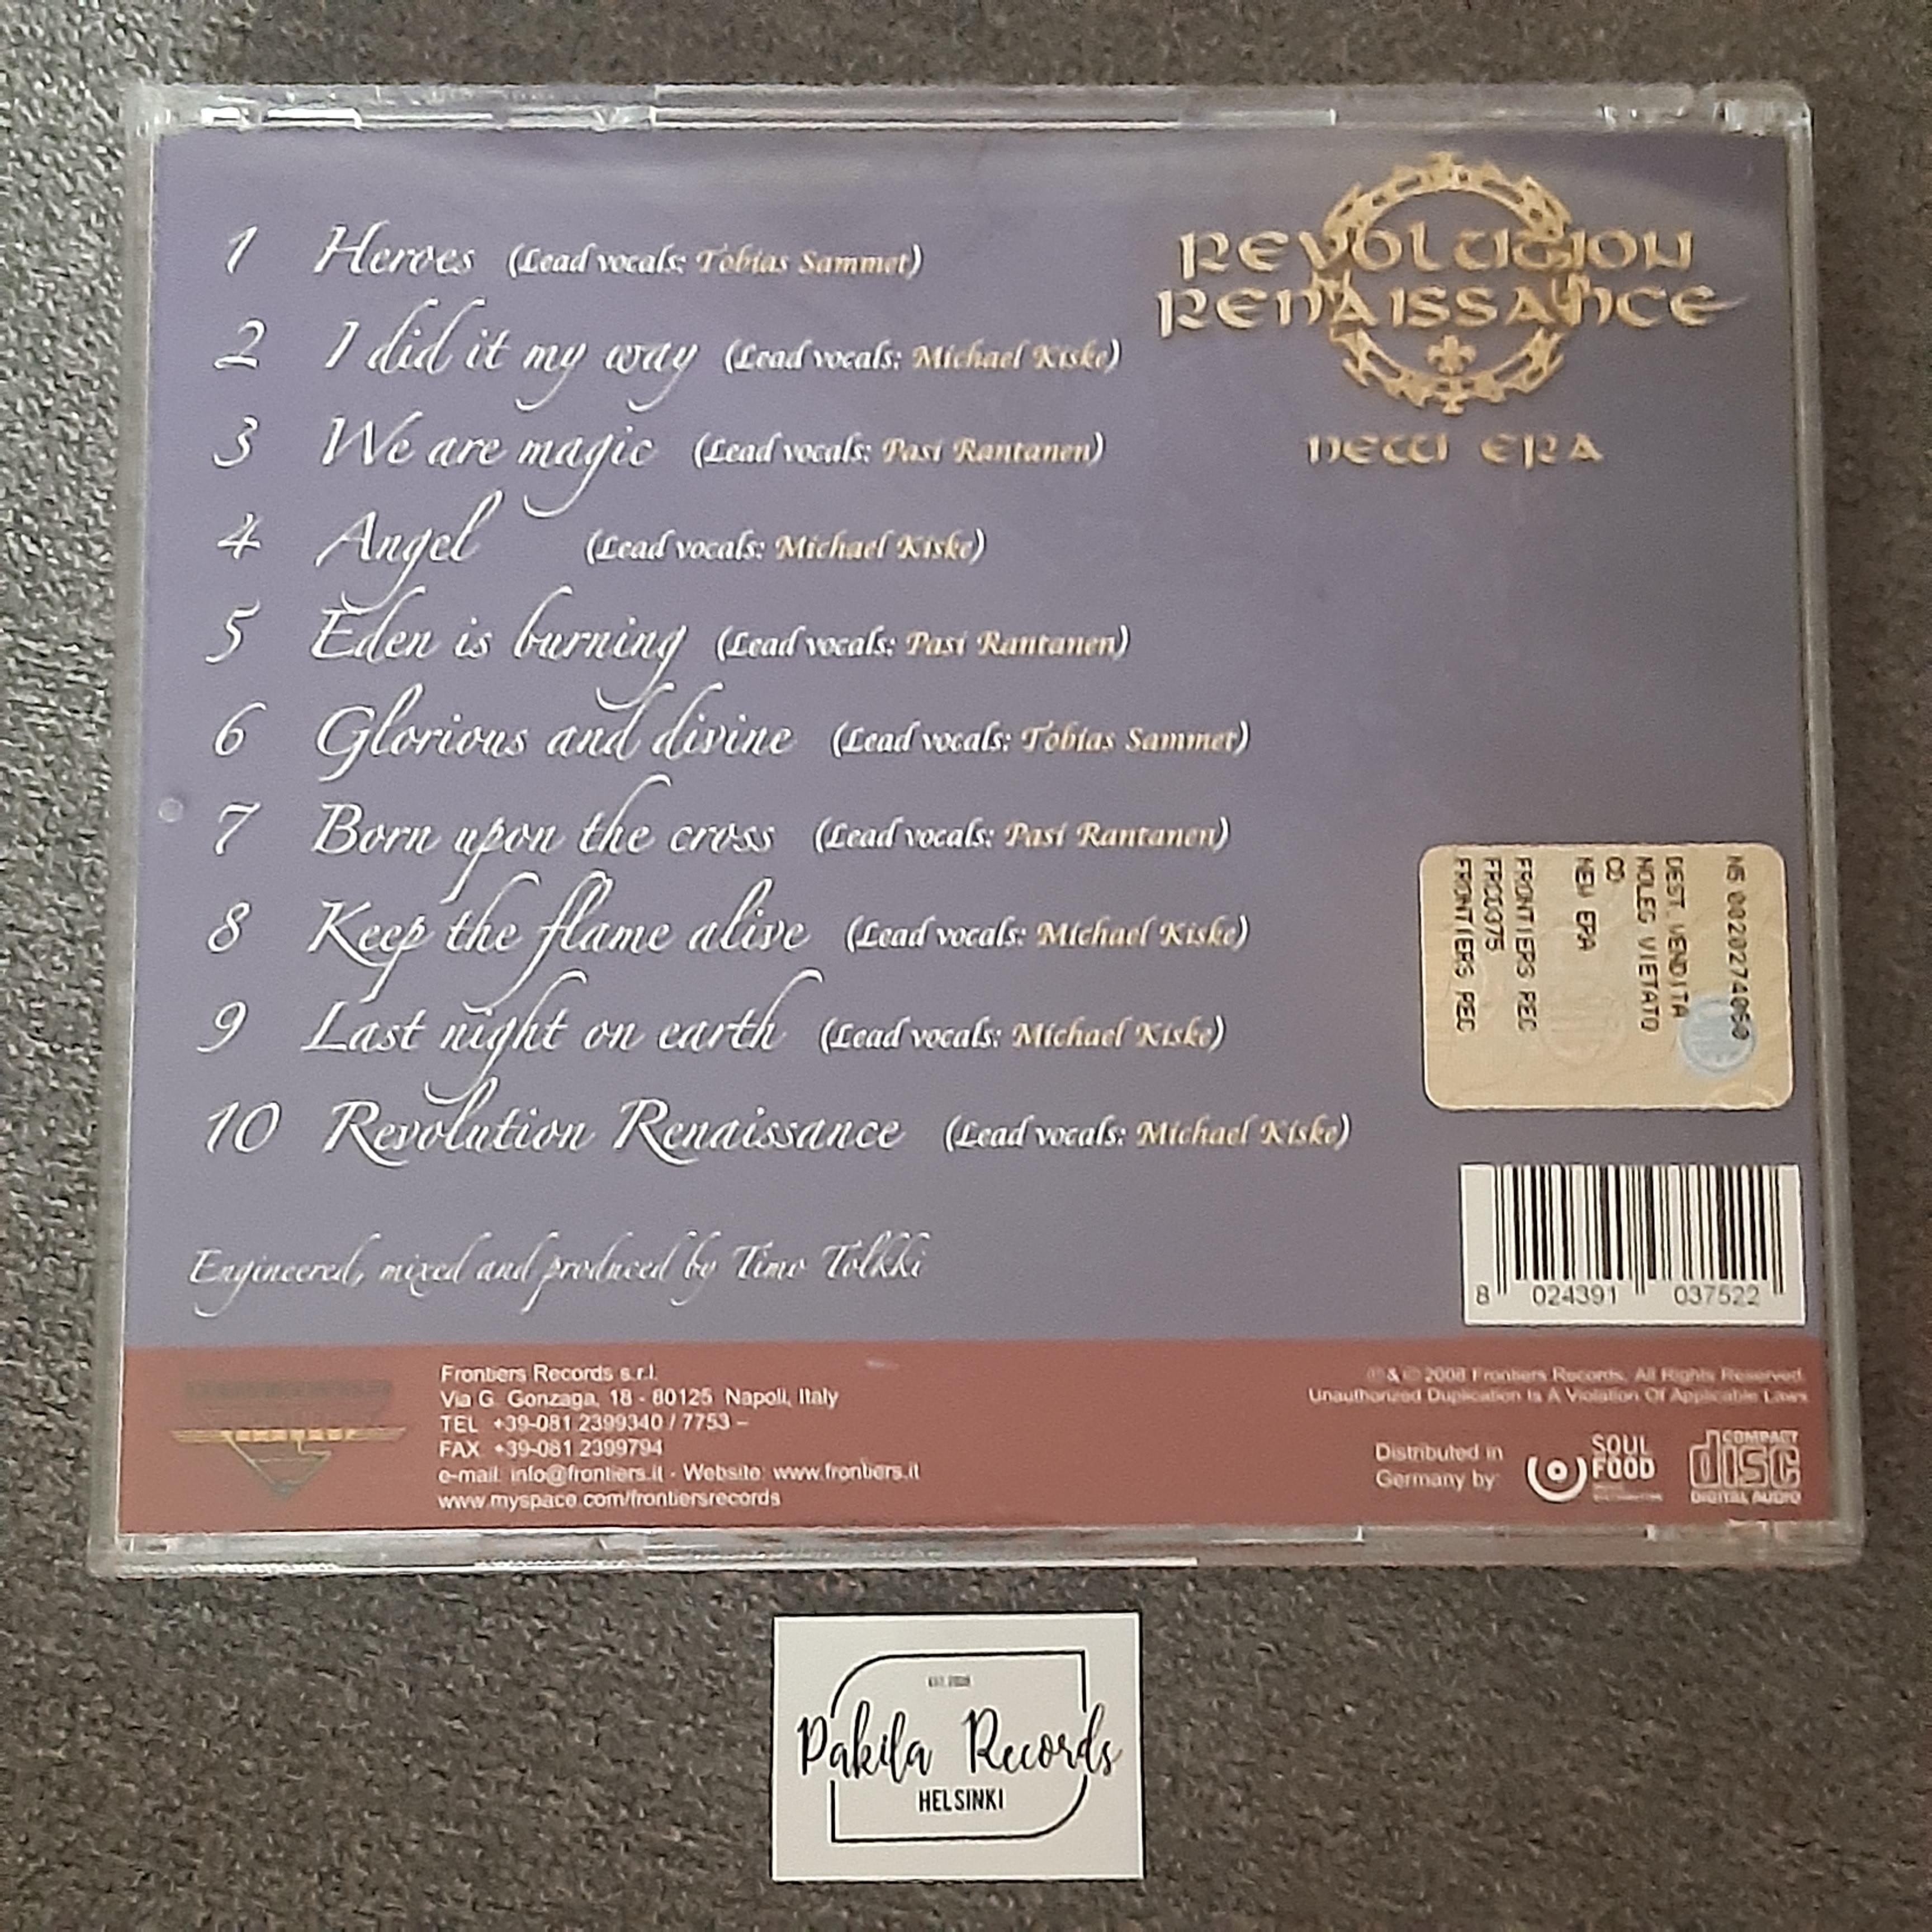 Revolution Renaissance - New Era - CD (käytetty)